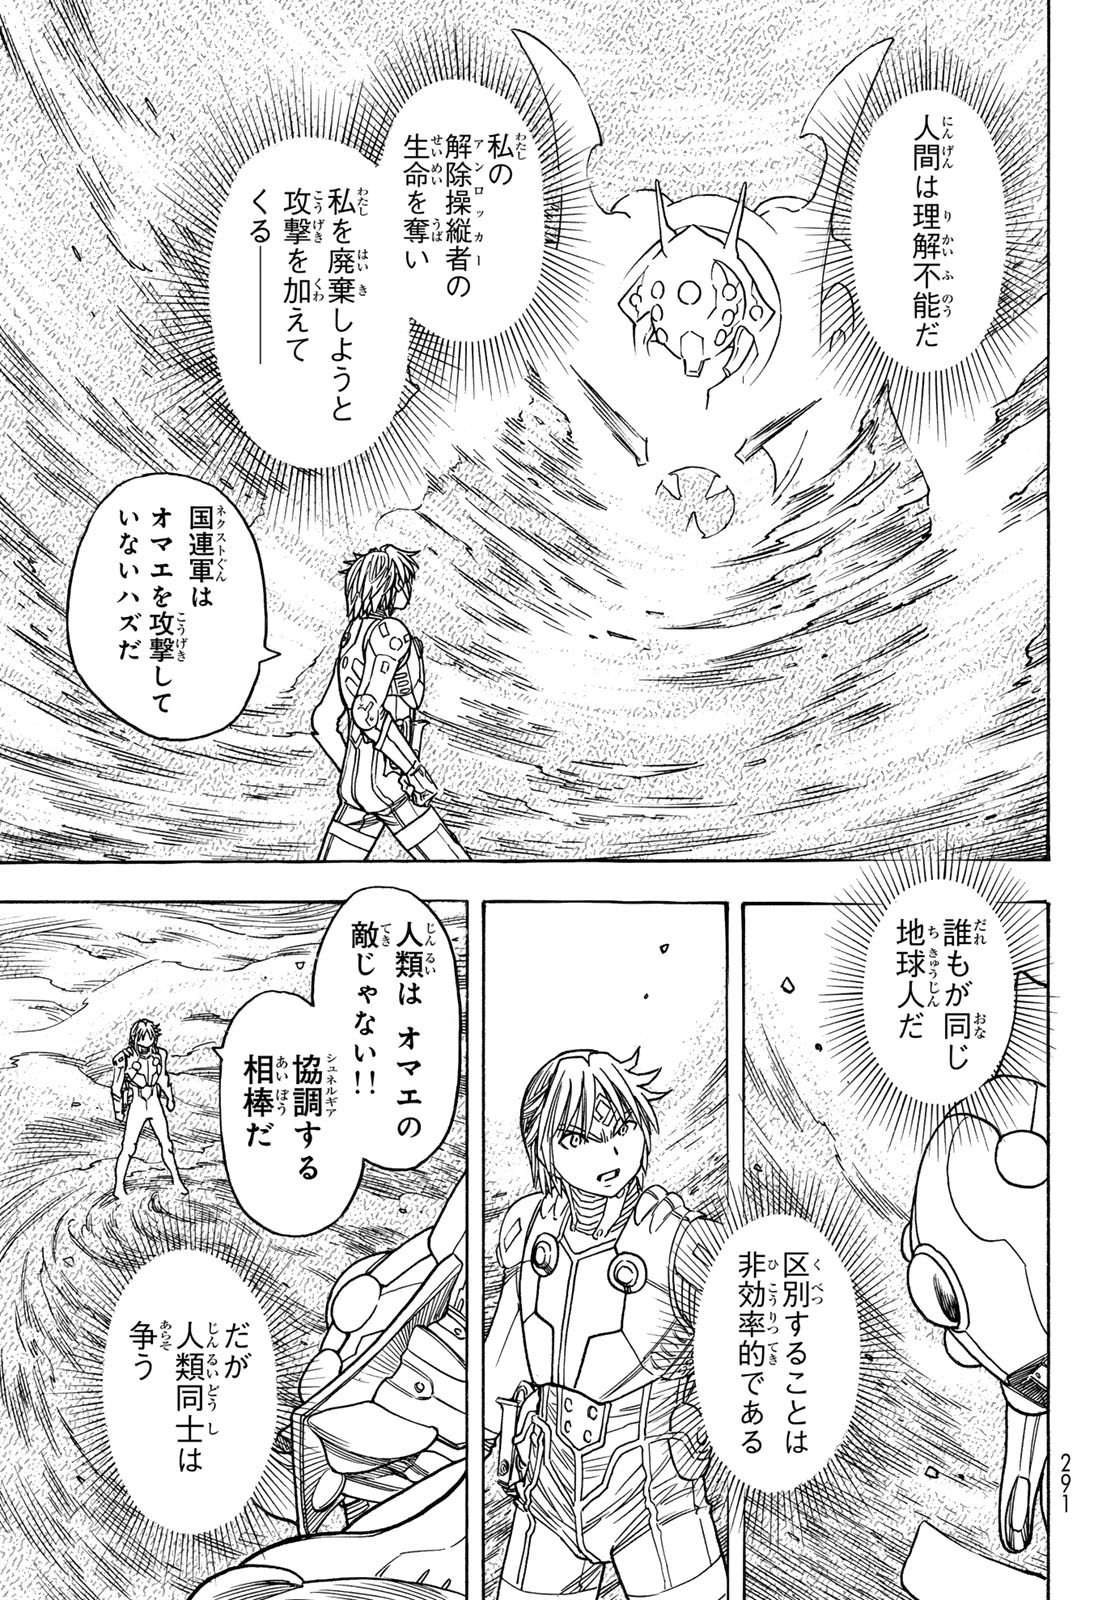 Mugou no Schnell Gear: Chikyuugai Kisouka AI - Chapter 51 - Page 7